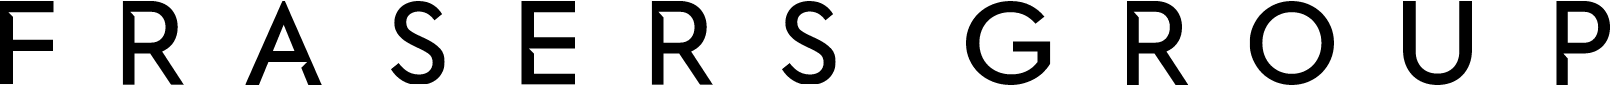 Frasers Group logo large (transparent PNG)